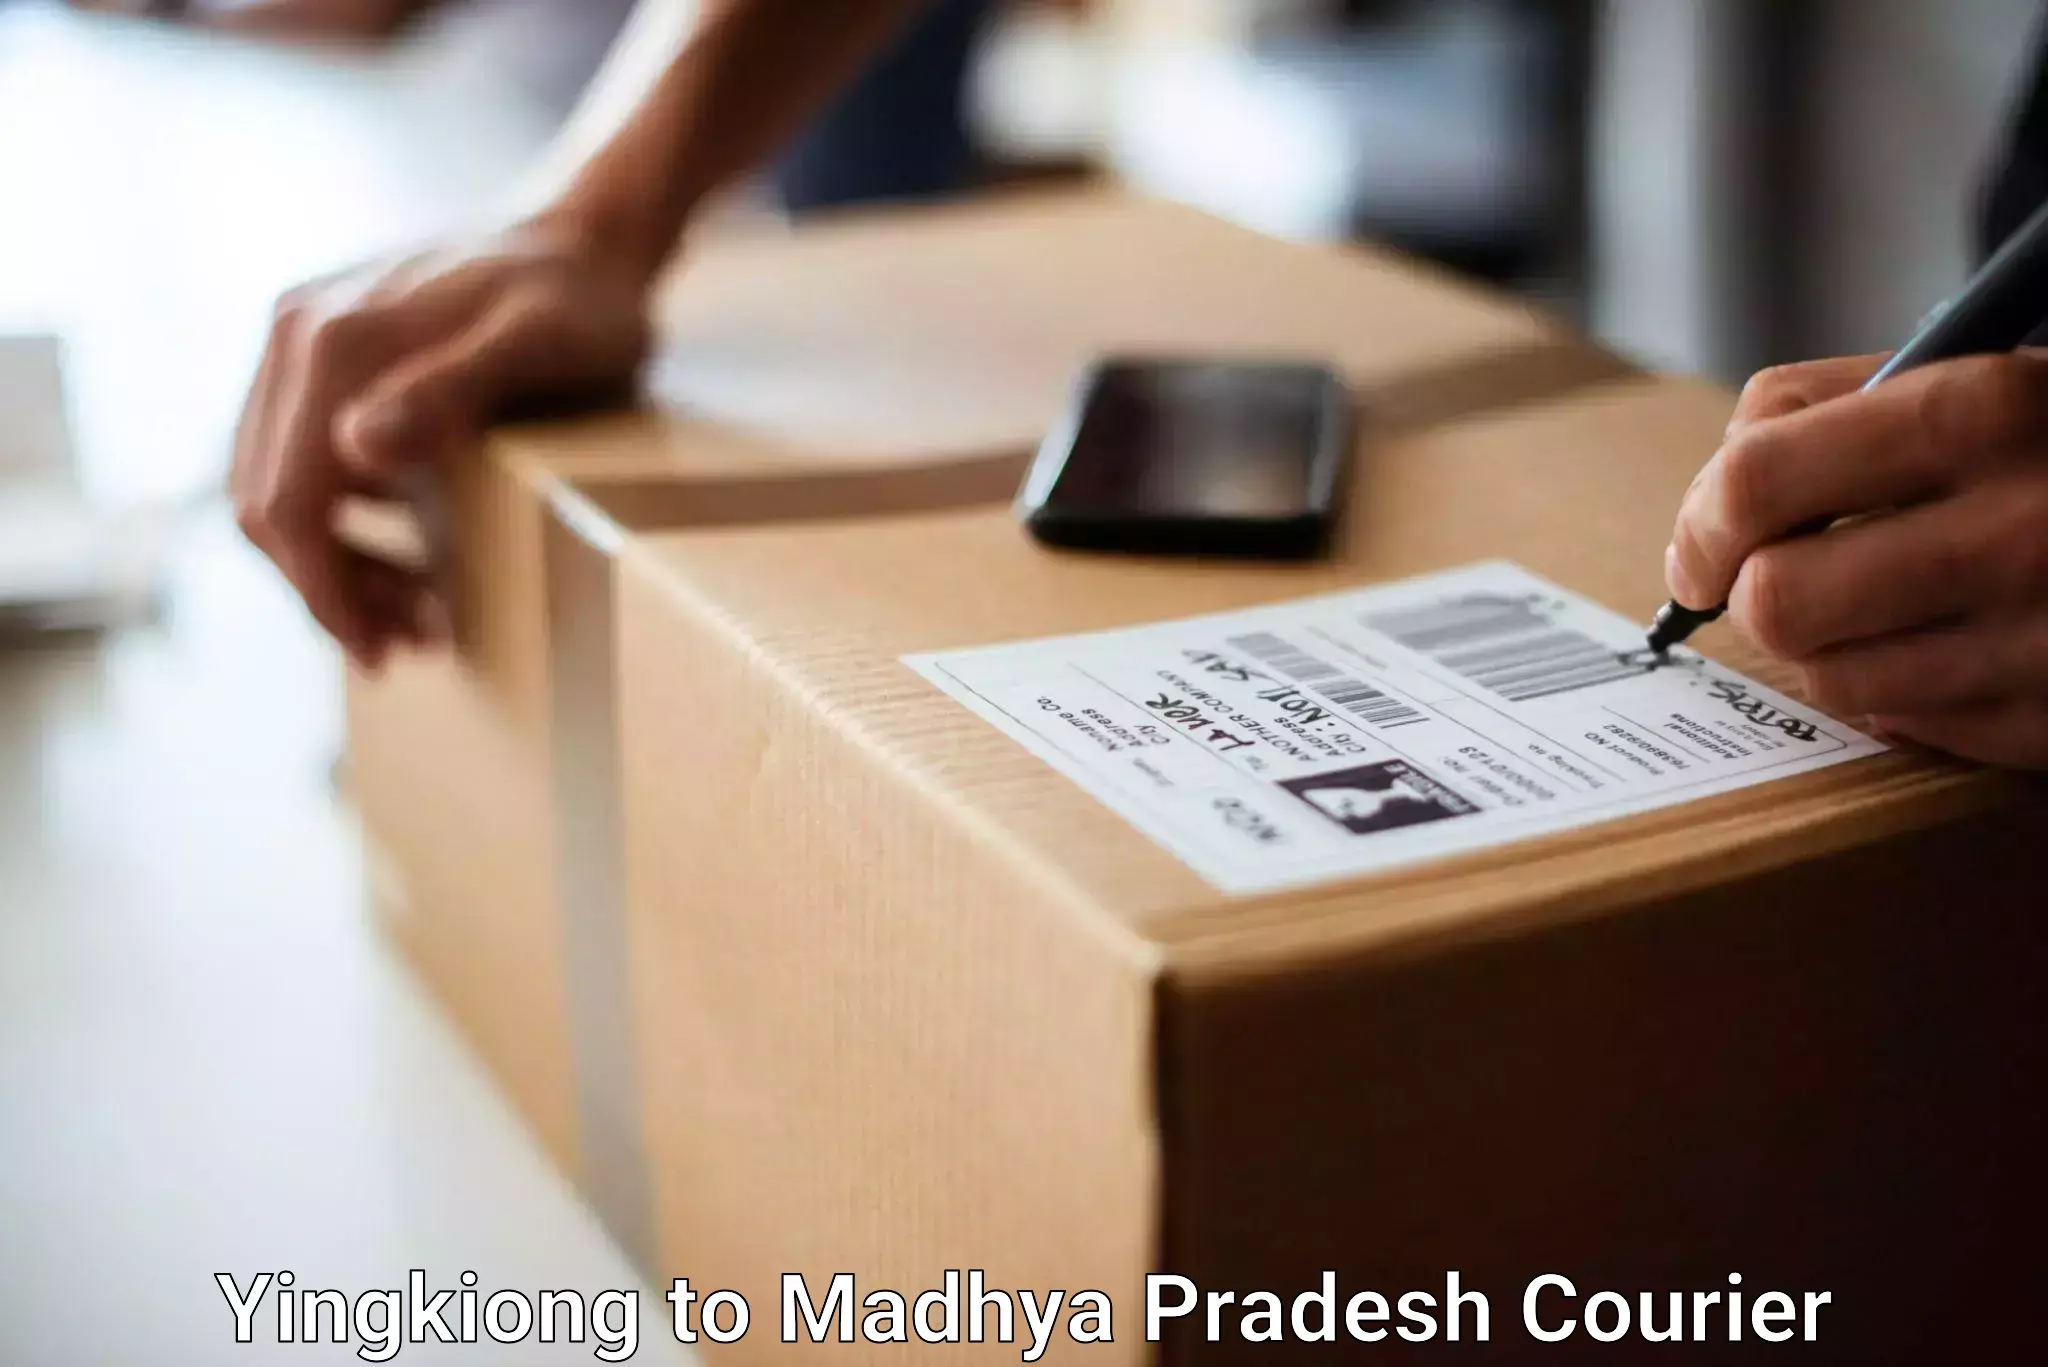 Baggage transport scheduler Yingkiong to Madhya Pradesh